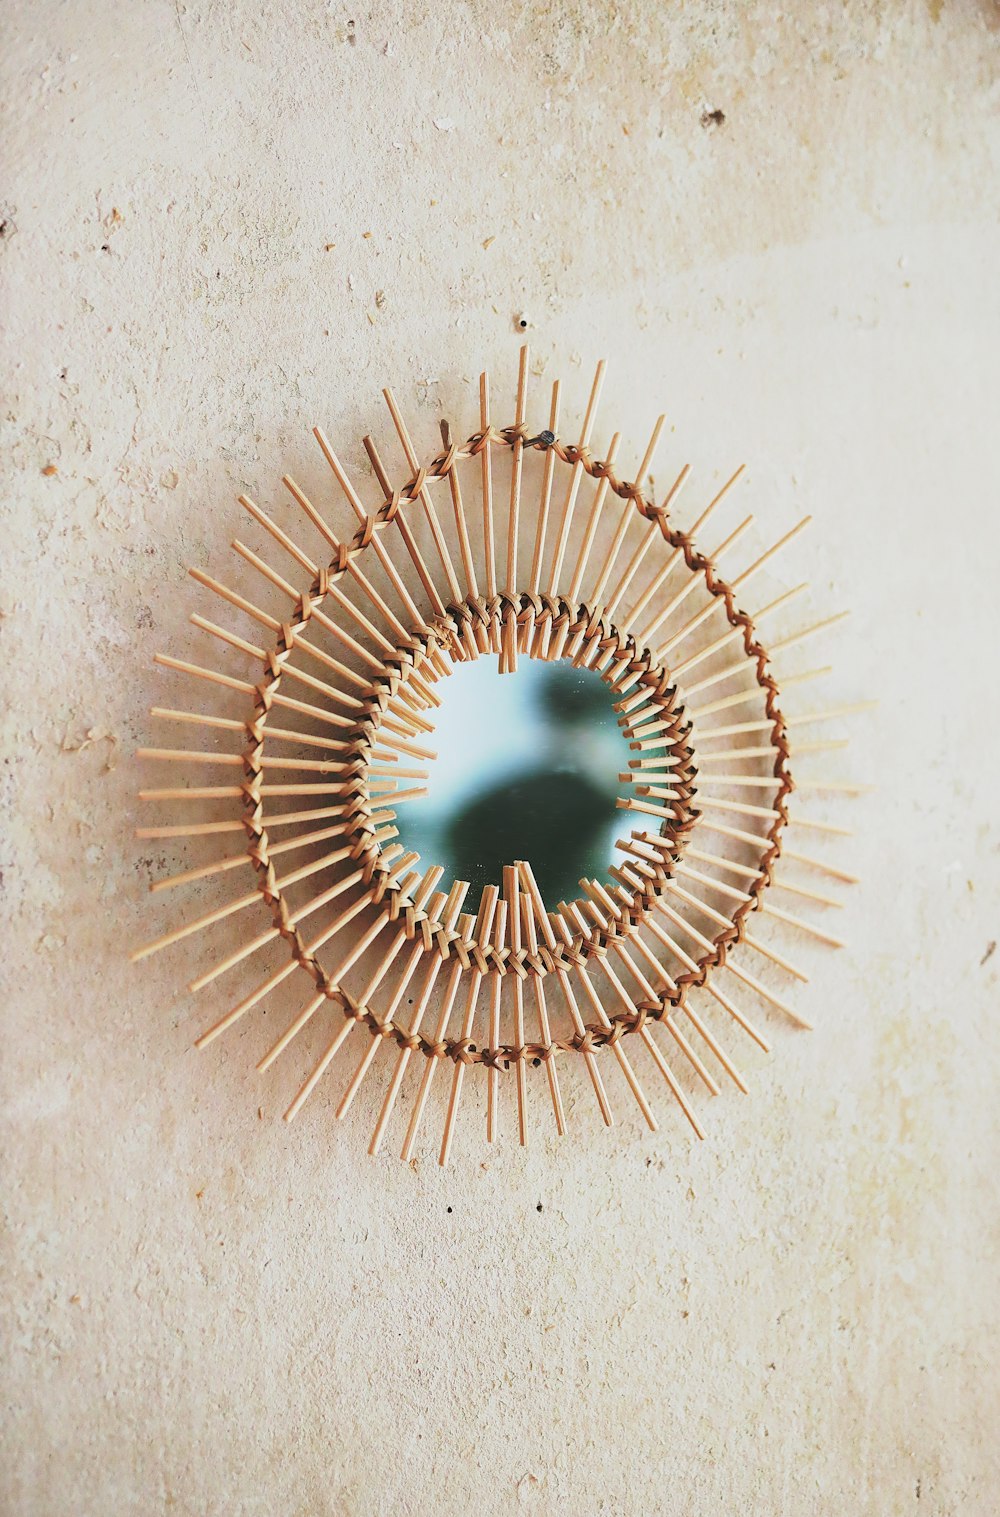 Metal en espiral marrón sobre piso de concreto blanco